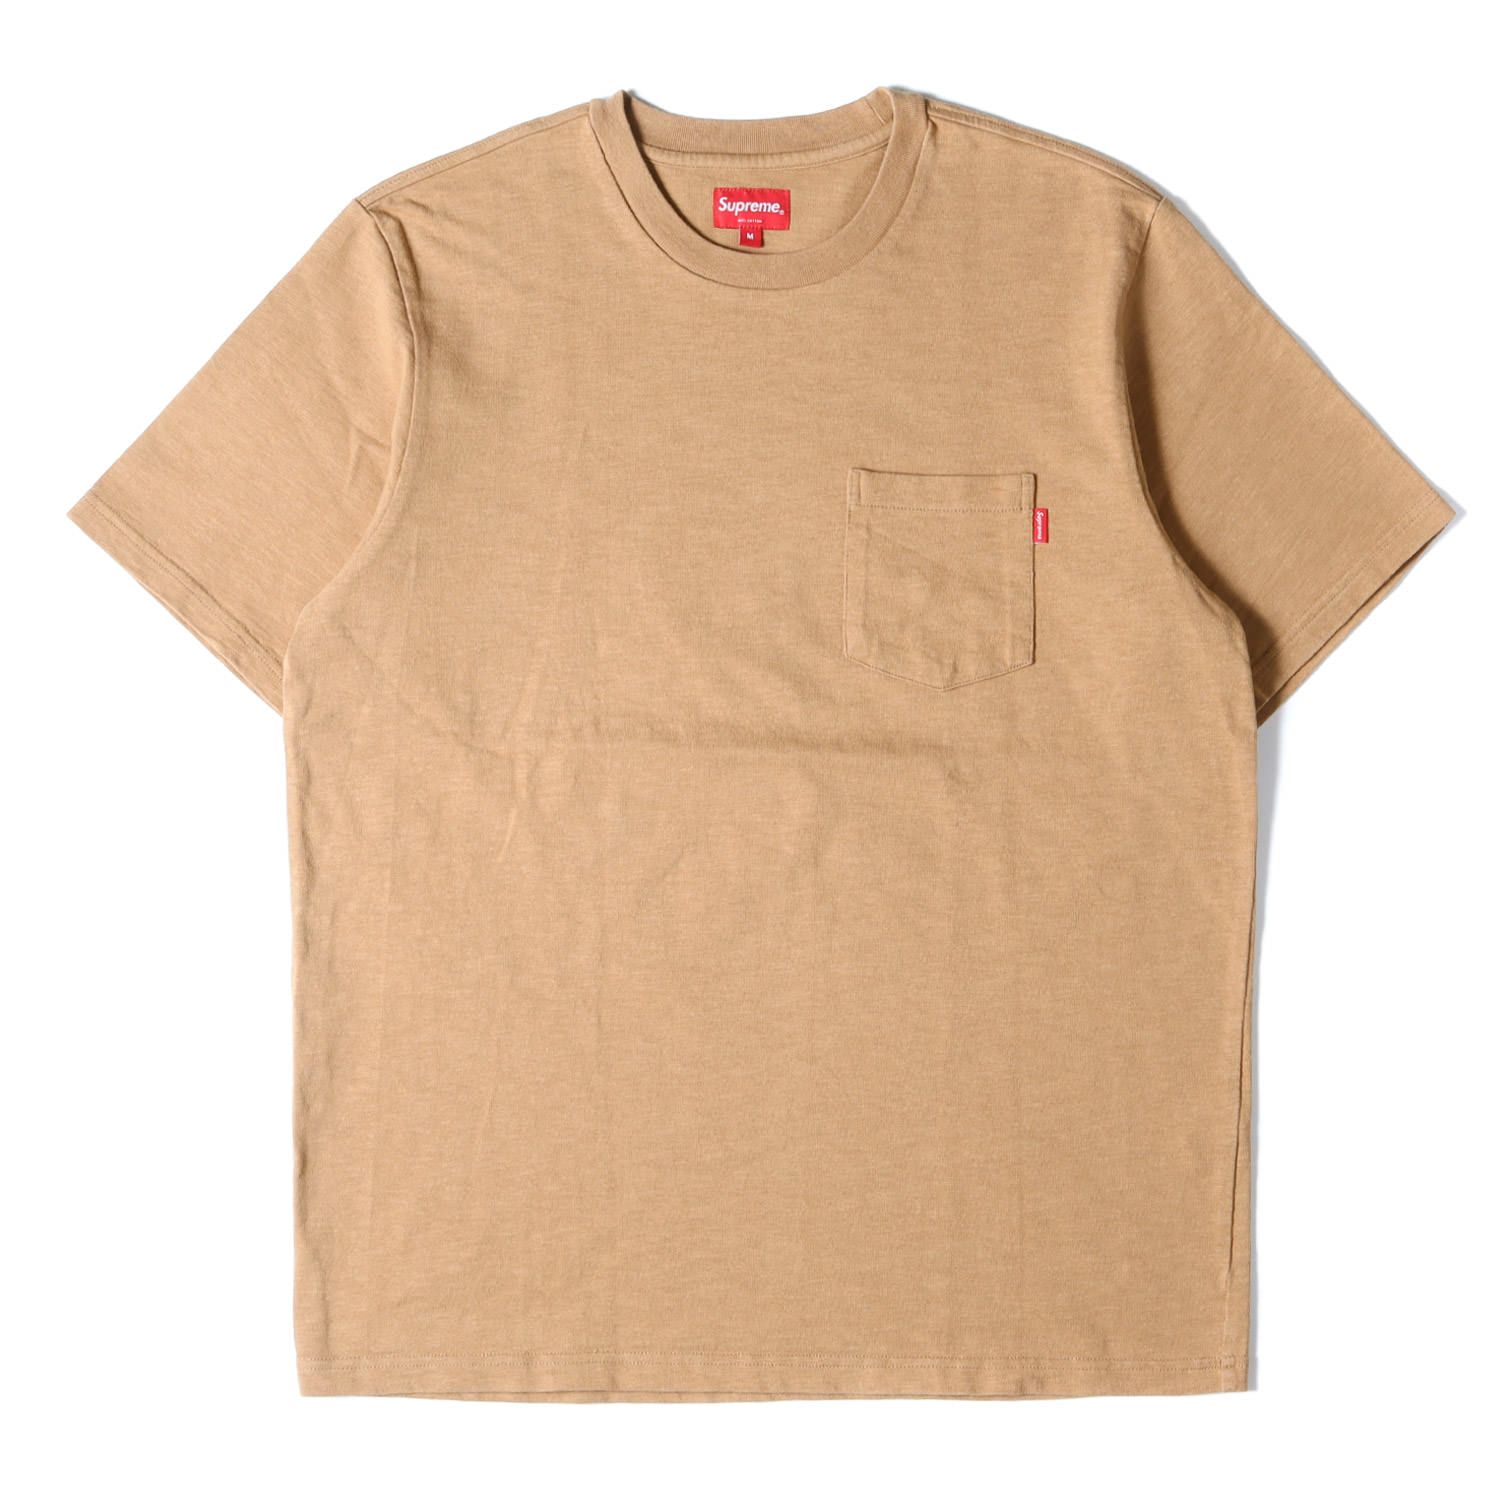 Supreme シュプリーム Tシャツ サイズ:M 20SS ポケット付き ...